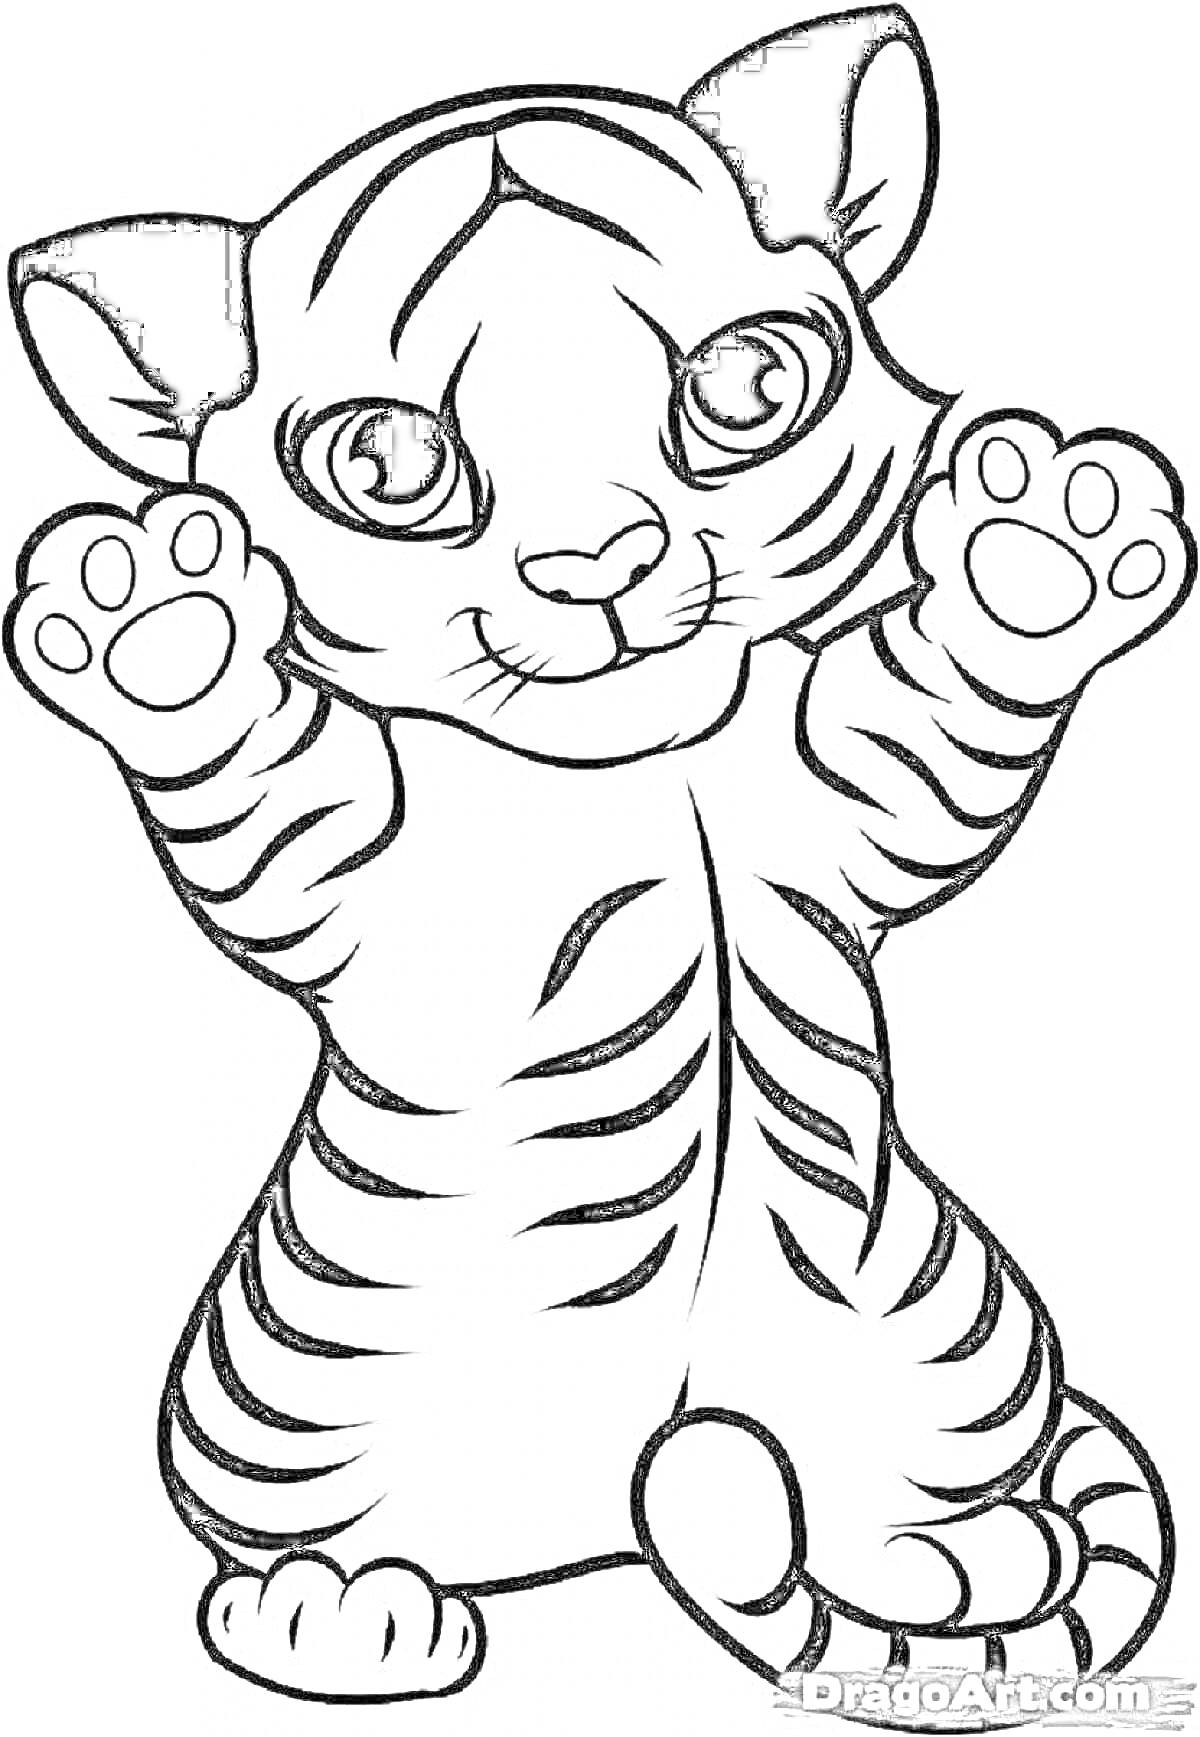 Раскраска мультяшный тигрёнок с лапками вверх